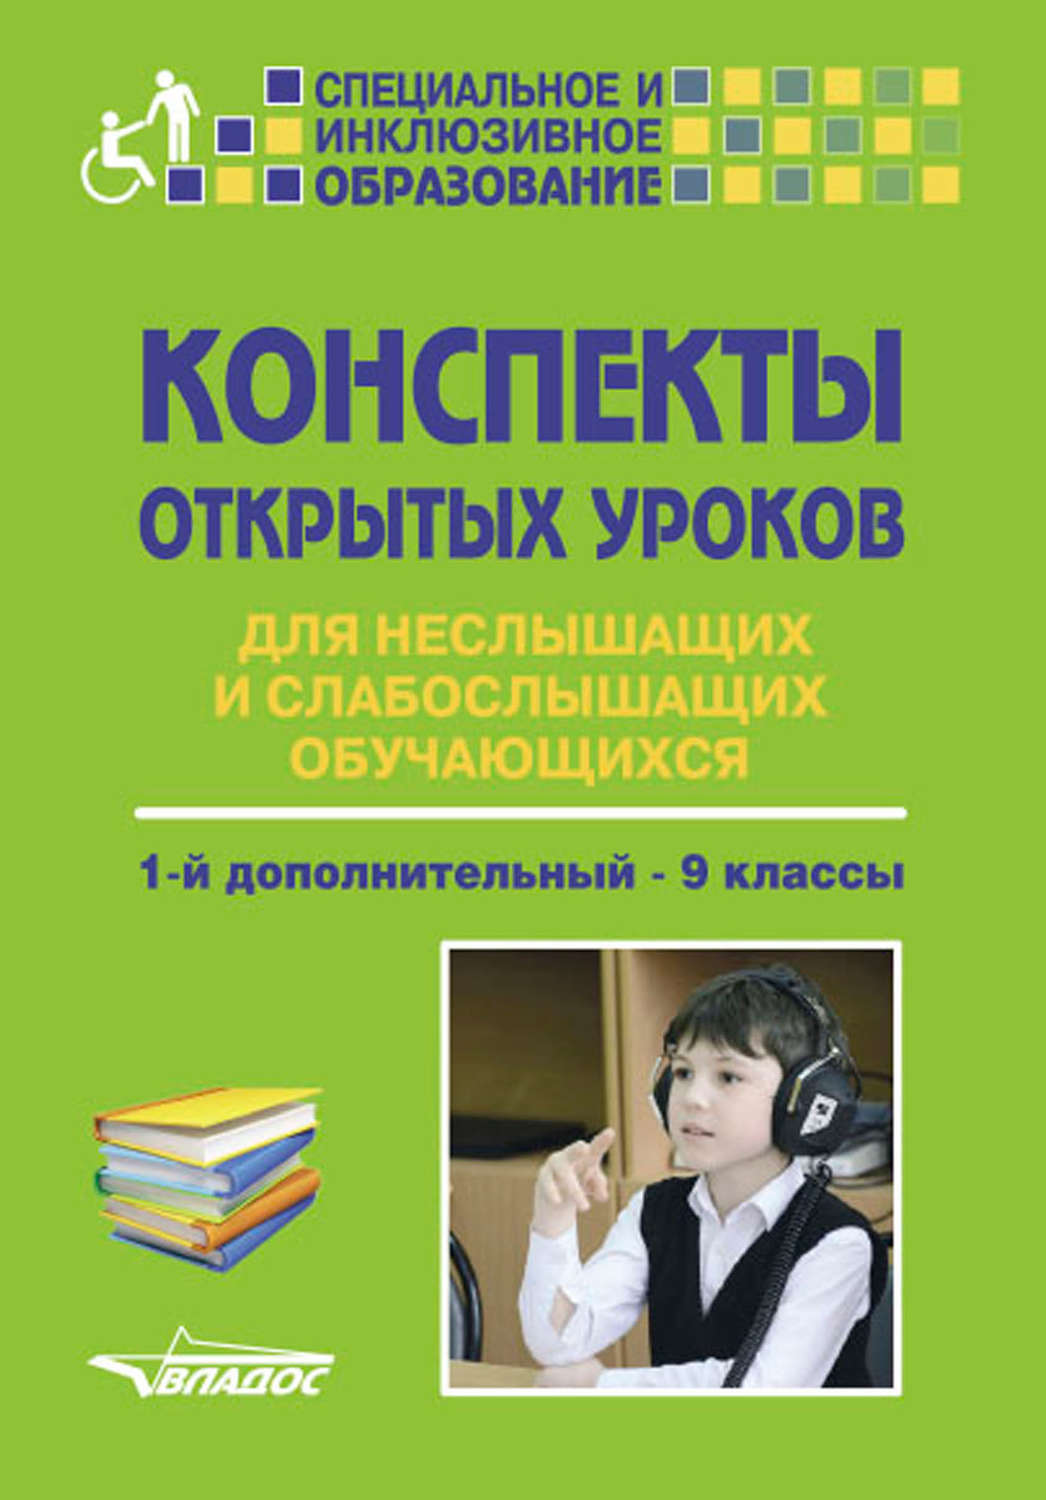 Рабочая программа слабослышащие. Учебное пособие для слабослышащих детей. Конспект занятия со слабослышащими. Книги для глухих детей. Учебник для неслышащих детей.